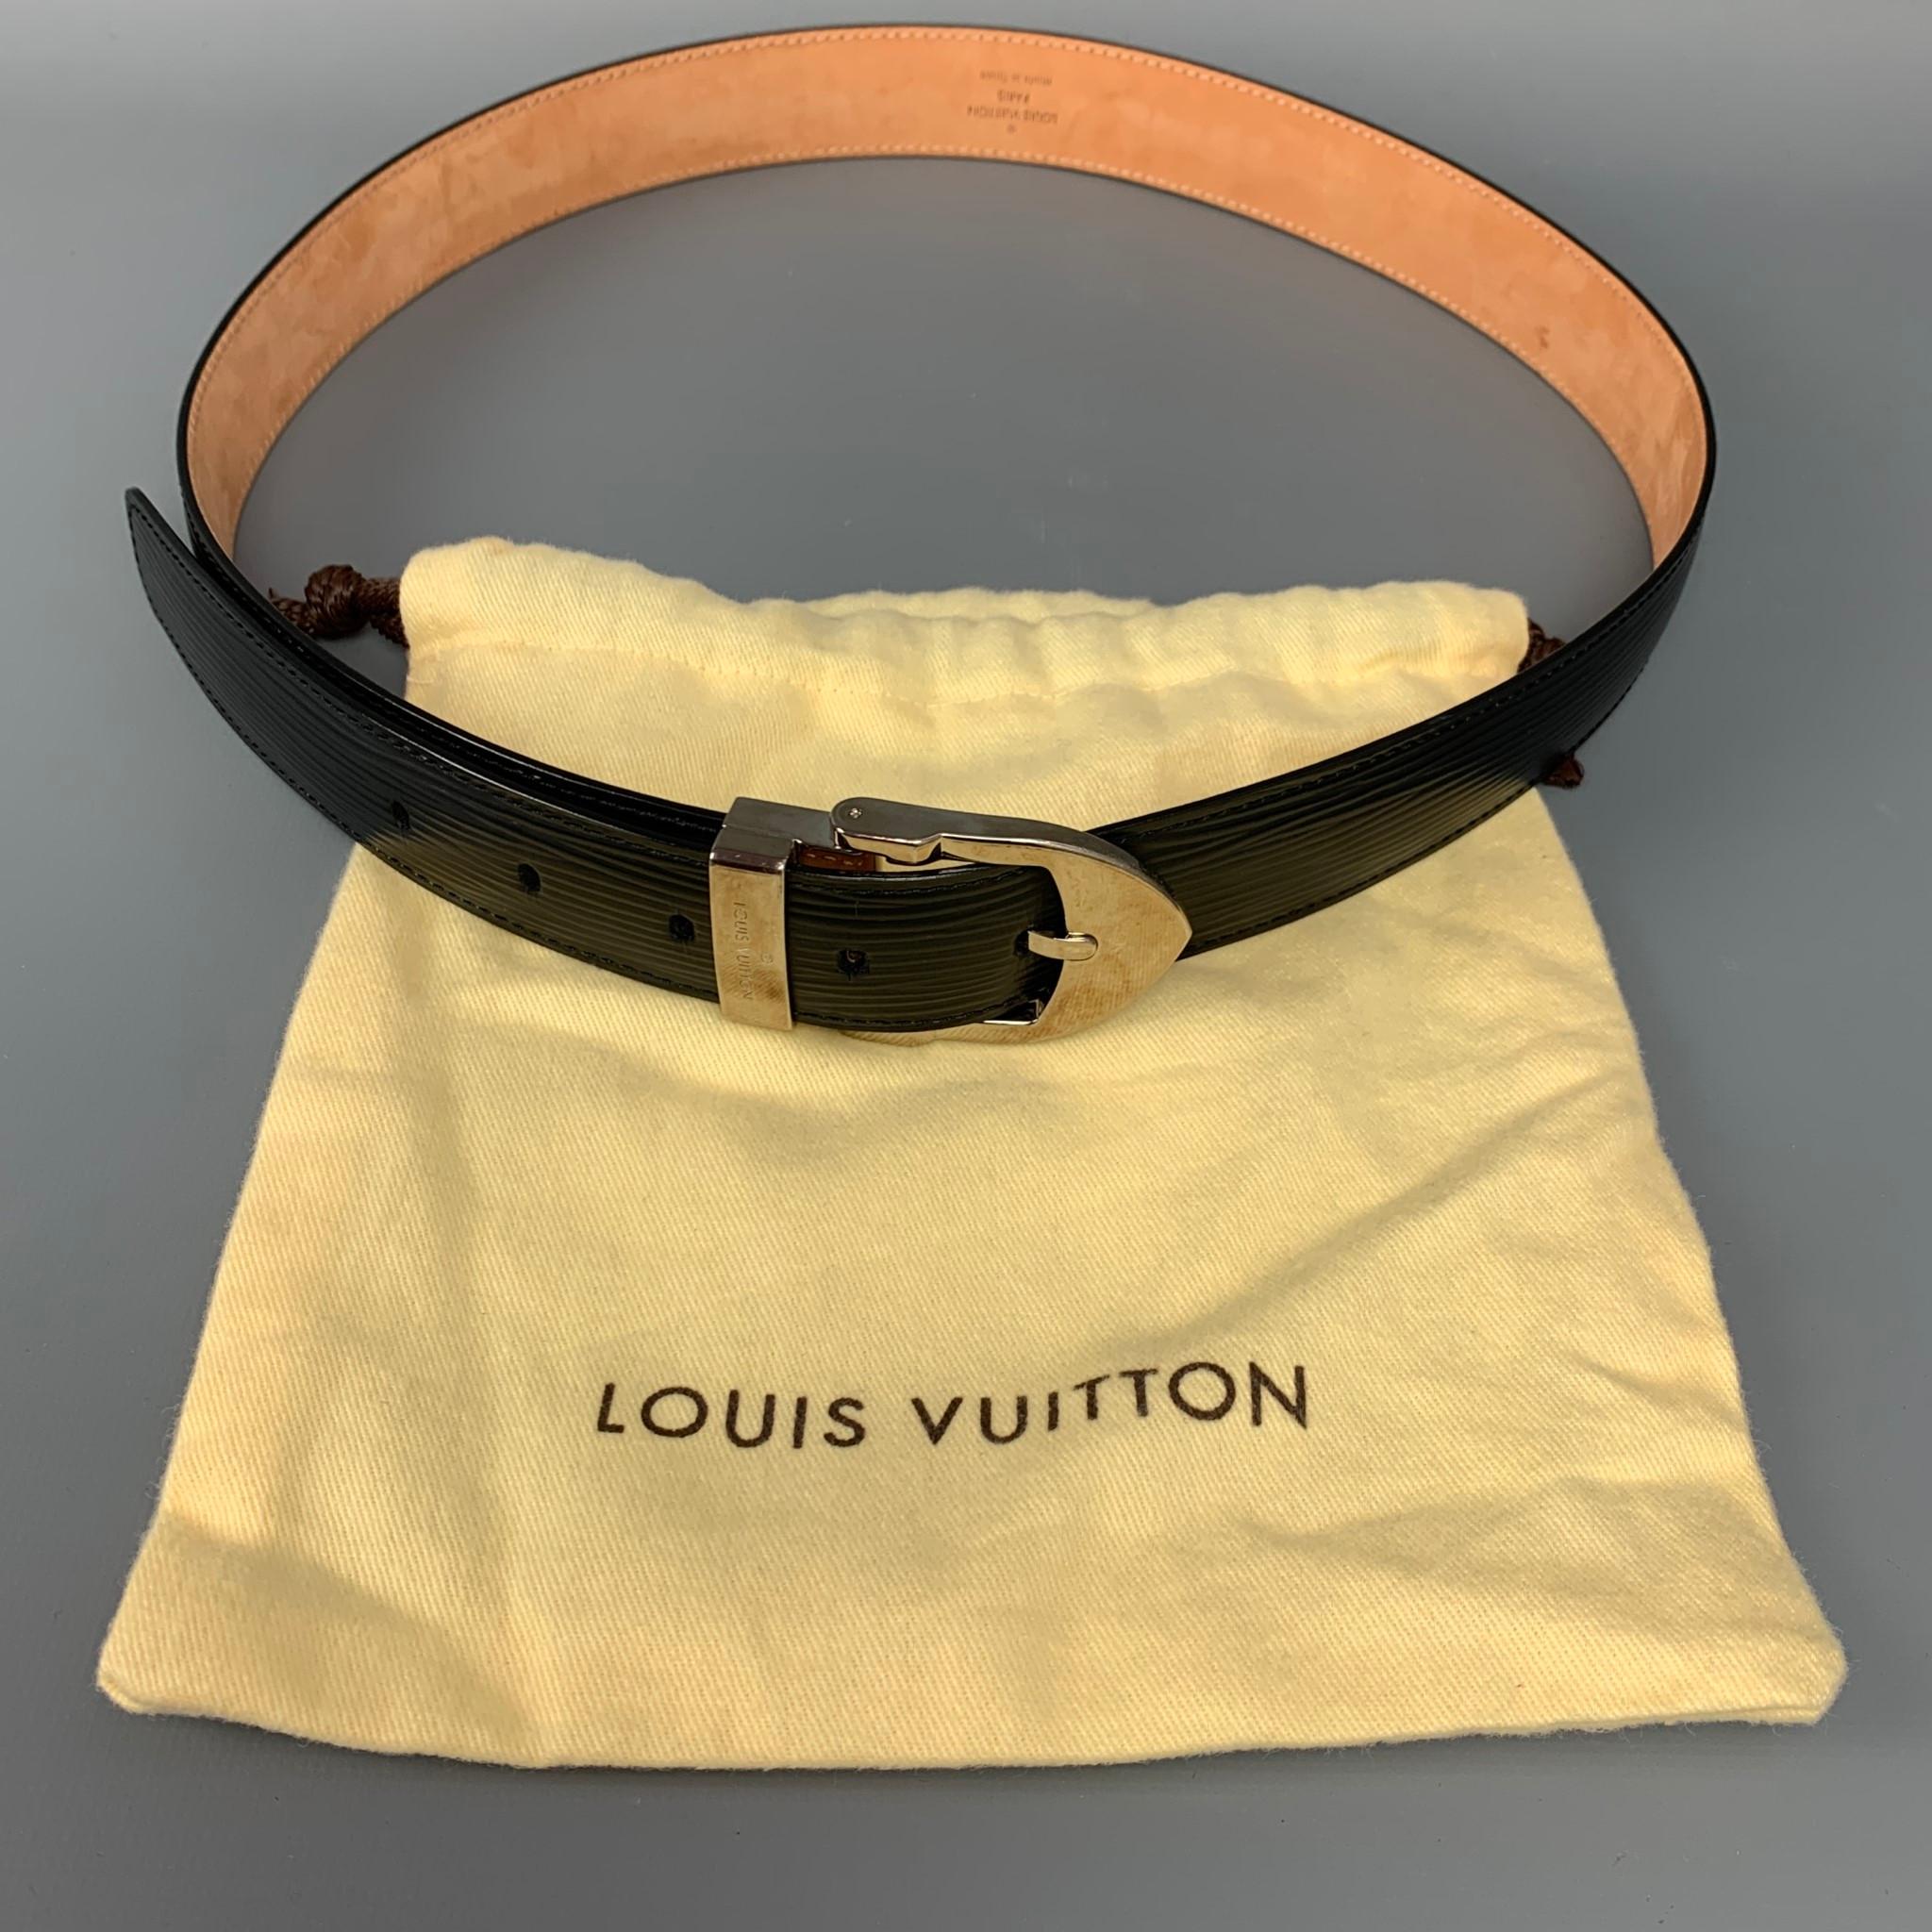 LOUIS VUITTON Size 36 Black Epi Leather Belt 1